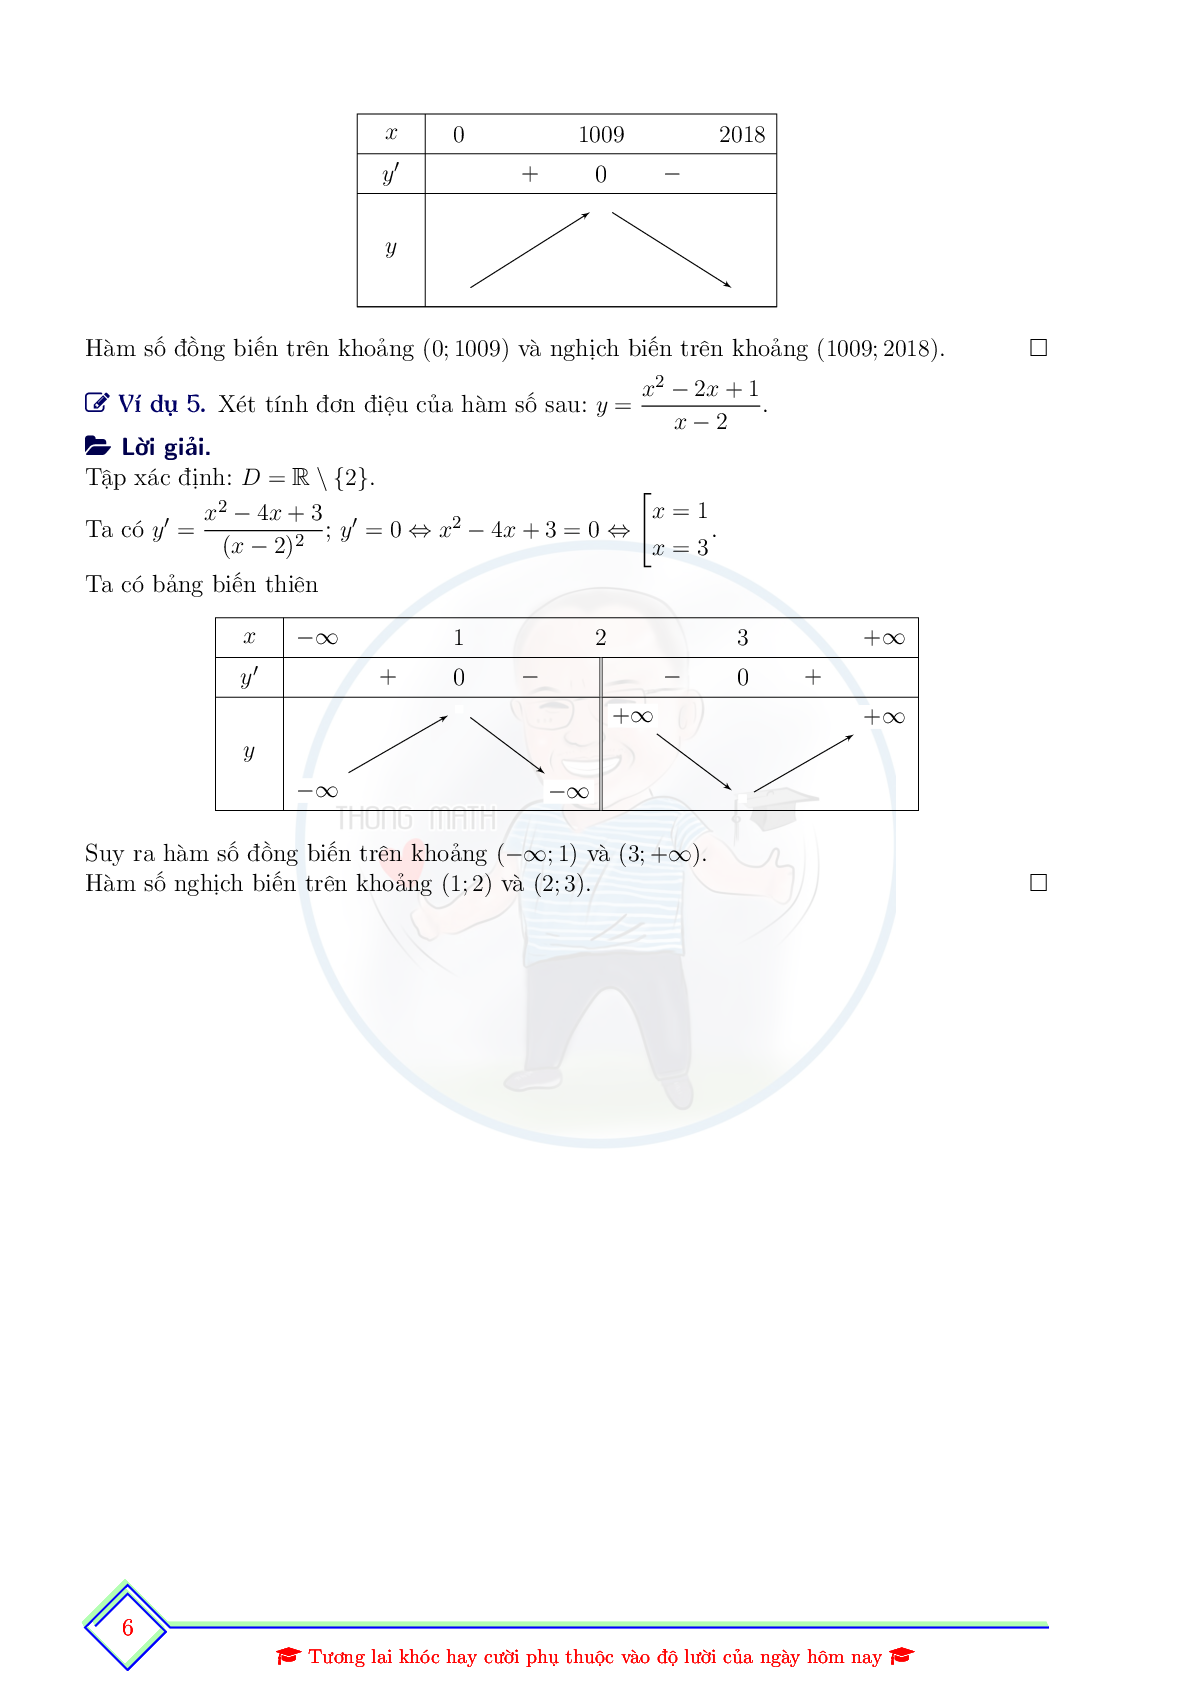 Chuyên đề về tính đơn điệu của hàm số ôn thi THPTQG (trang 8)